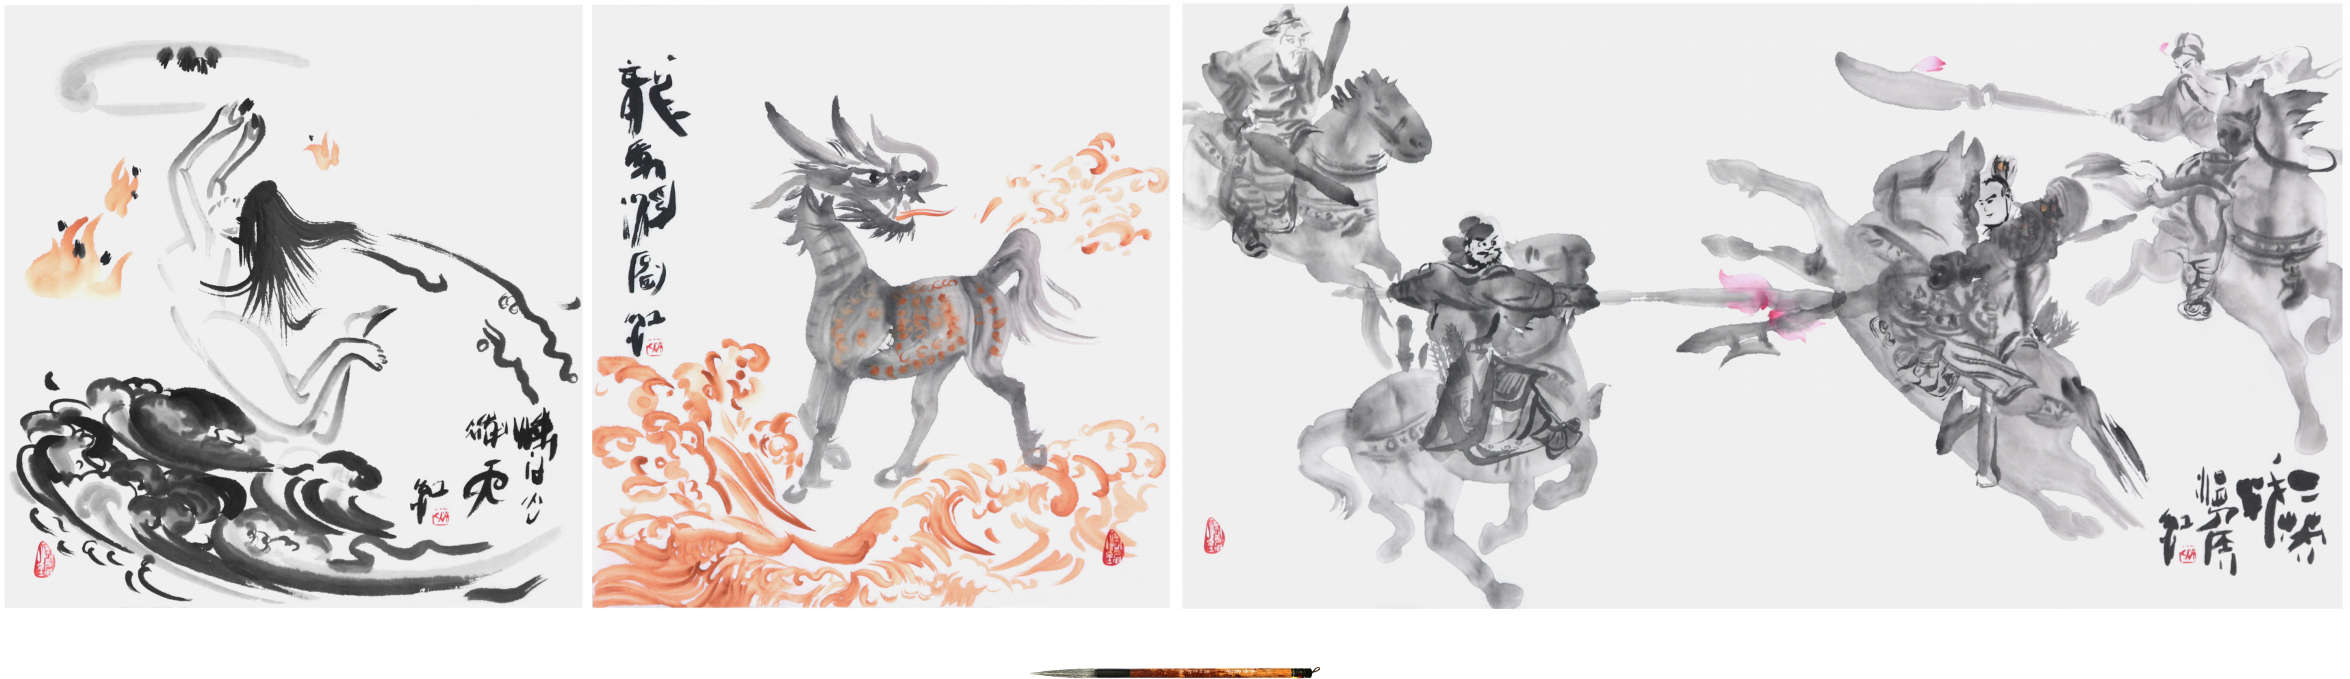 Sai Koh (Qi Hong)’s Freehand Brushwork Chinese Paintings: Chinese mythology, Chinese romance